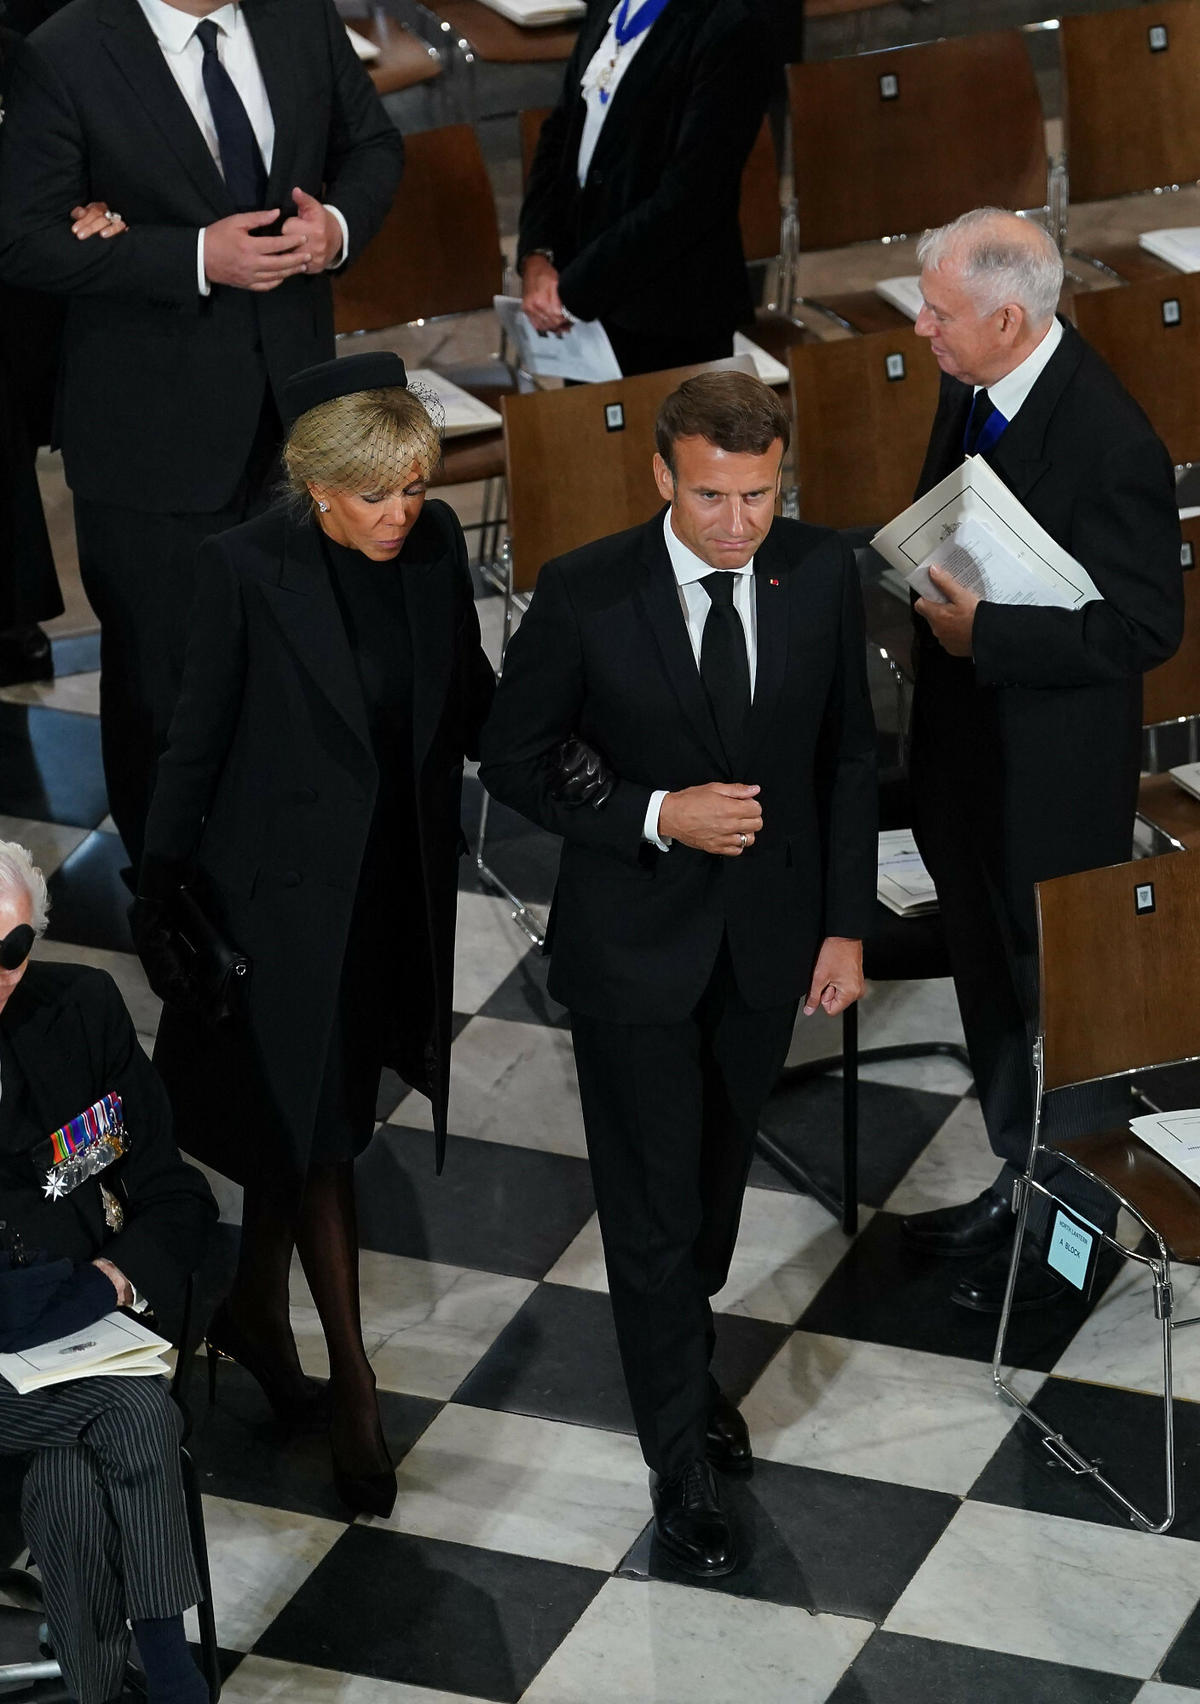 Macron zaliczył wpadkę na pogrzebie królowej Elżbiety II? Wszyscy patrzyli na jego buty